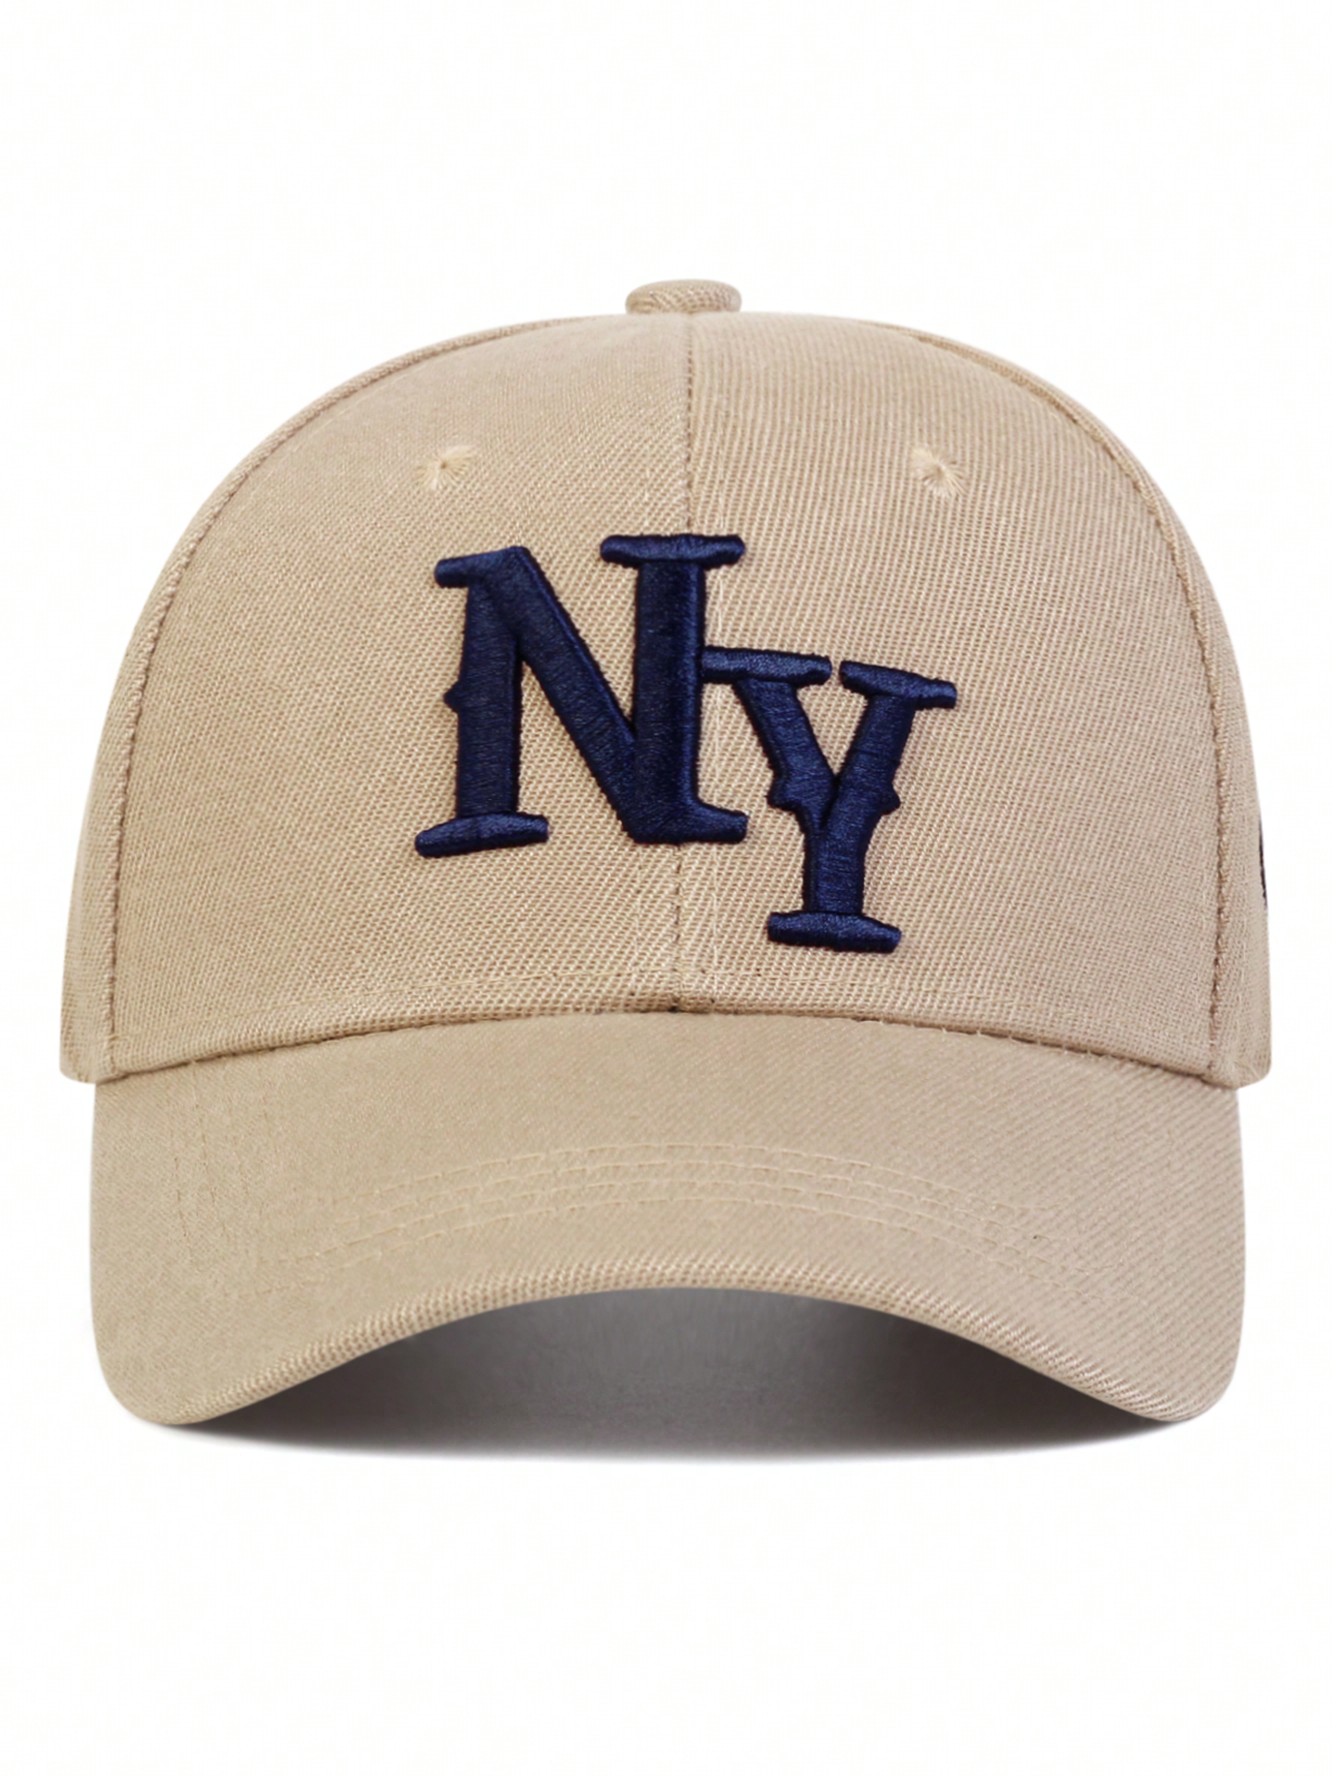 1 шт. мужская бейсболка с вышивкой букв «Нью-Йорк», хаки кепка женская летняя с козырьком модная бейсболка пляжная шляпа от солнца